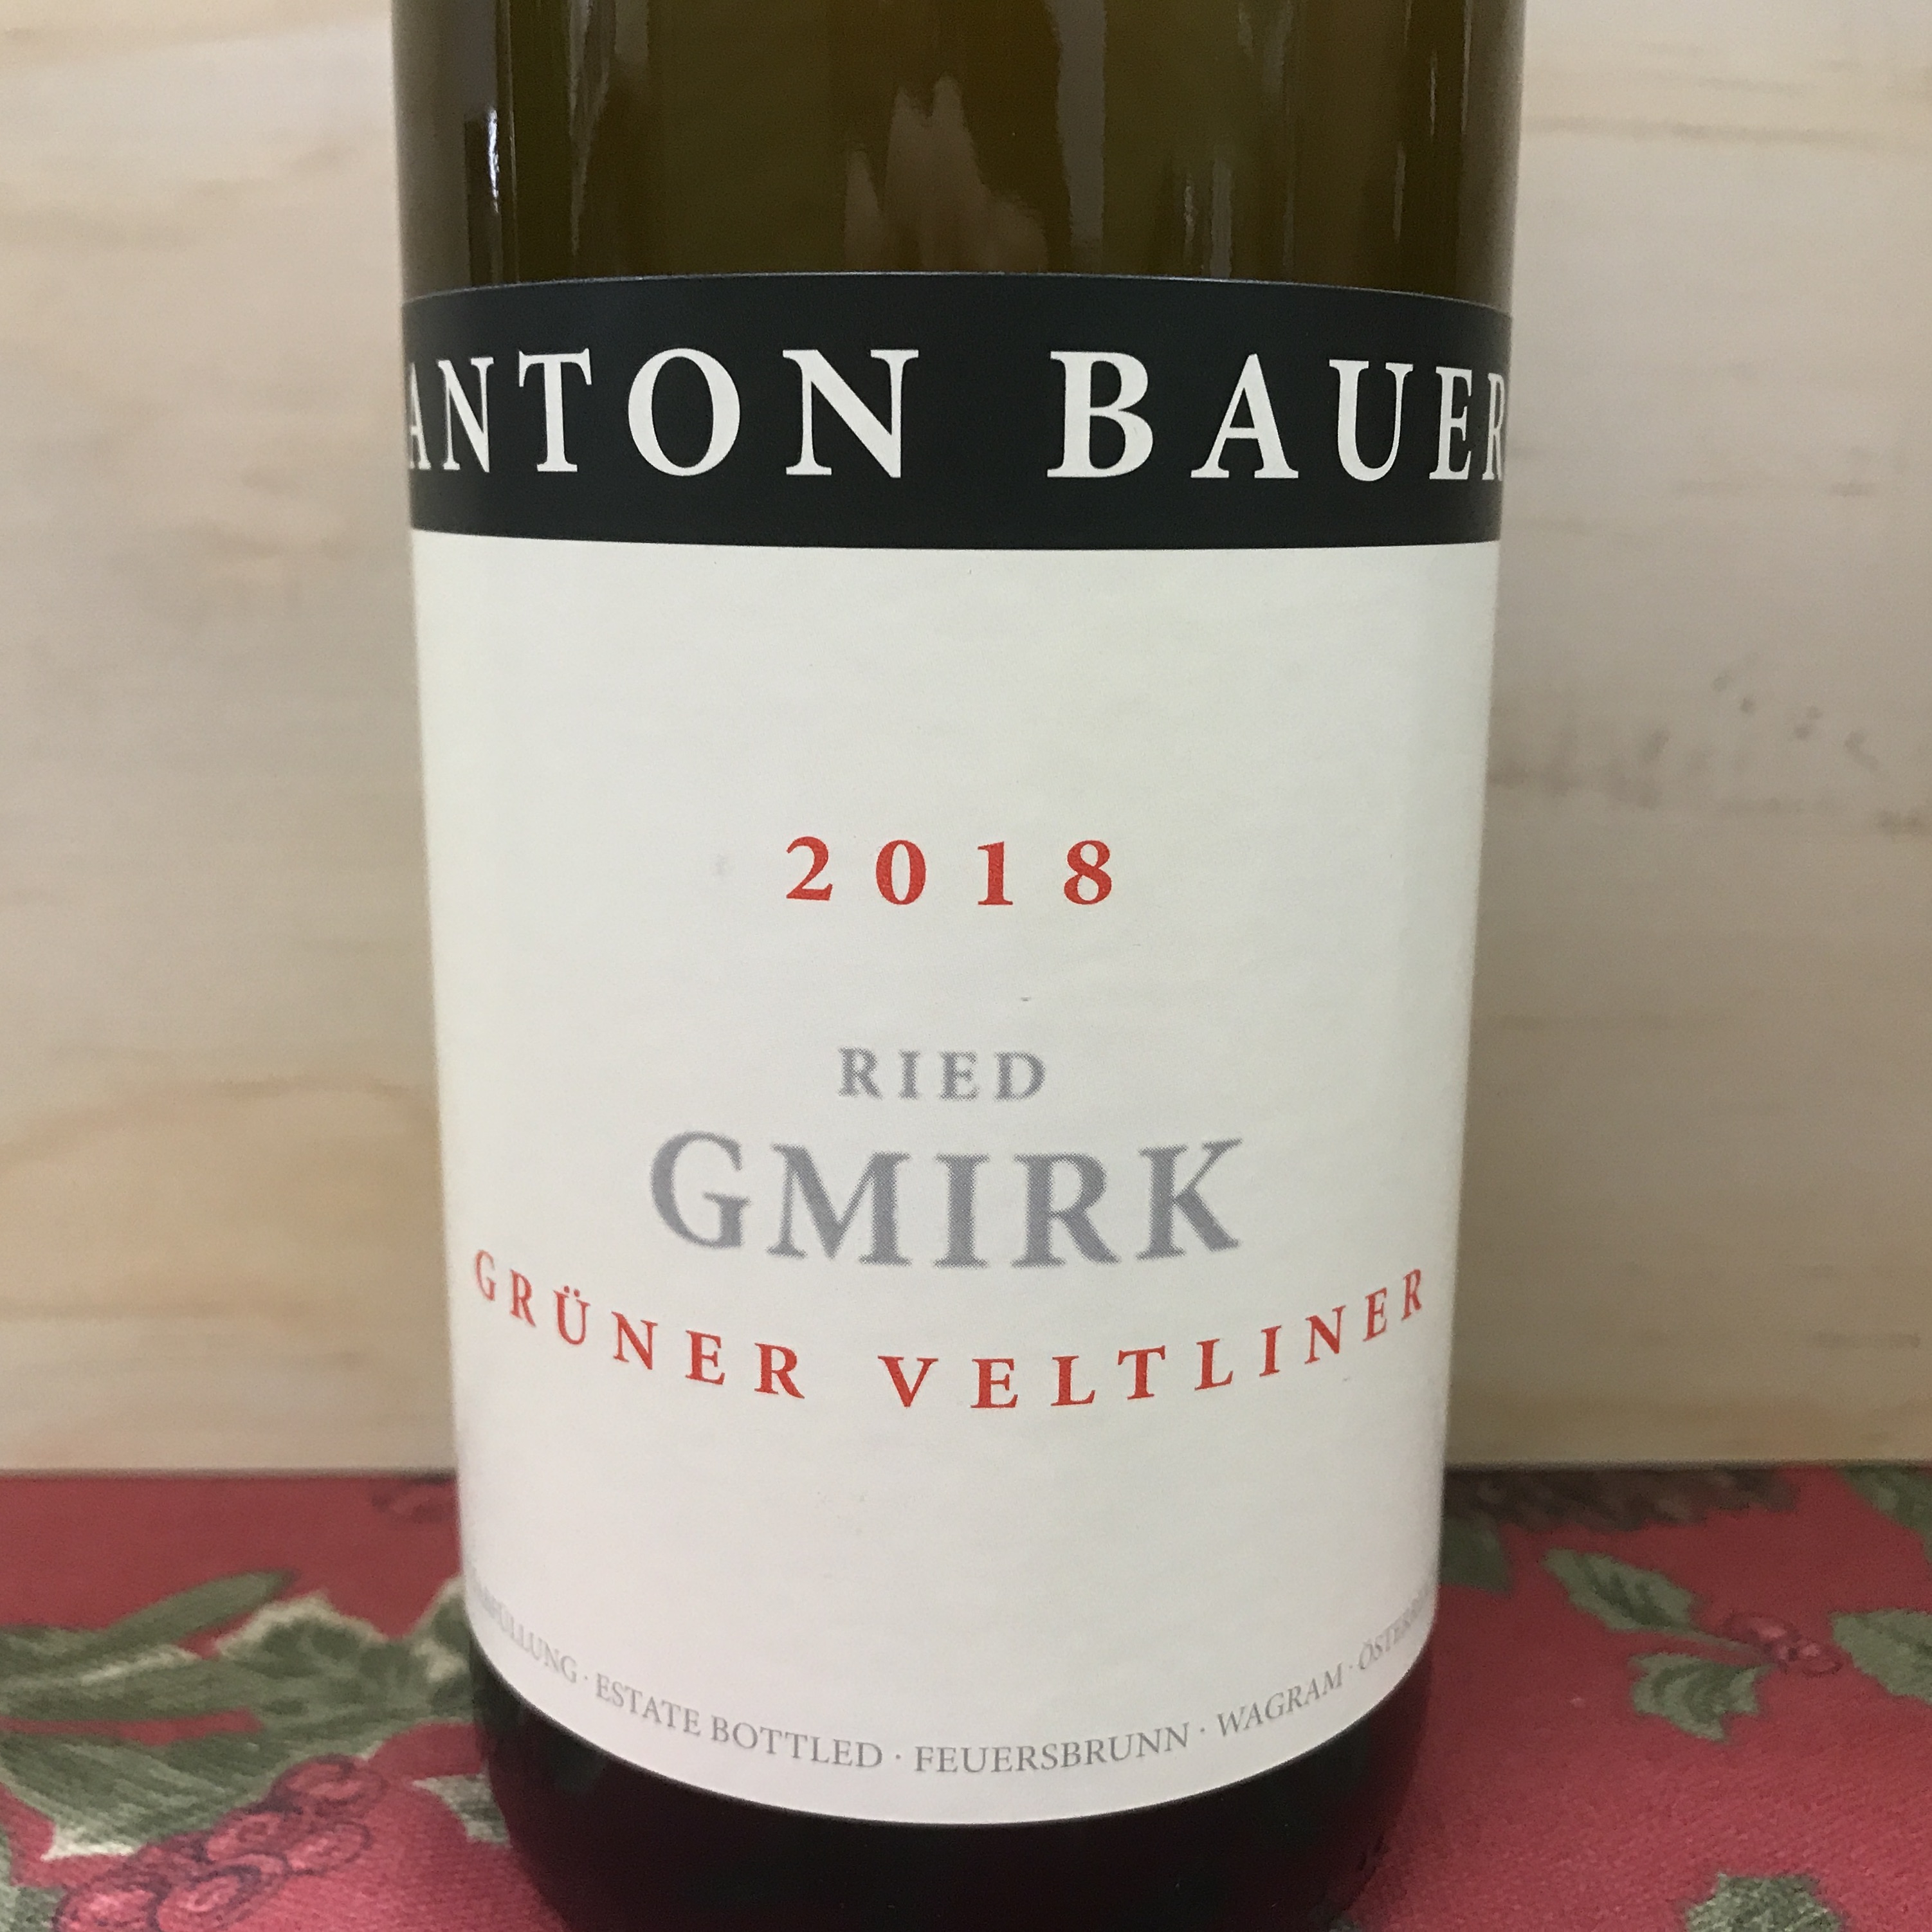 Anton Bauer Ried Gmirk Gruner Veltliner 2018